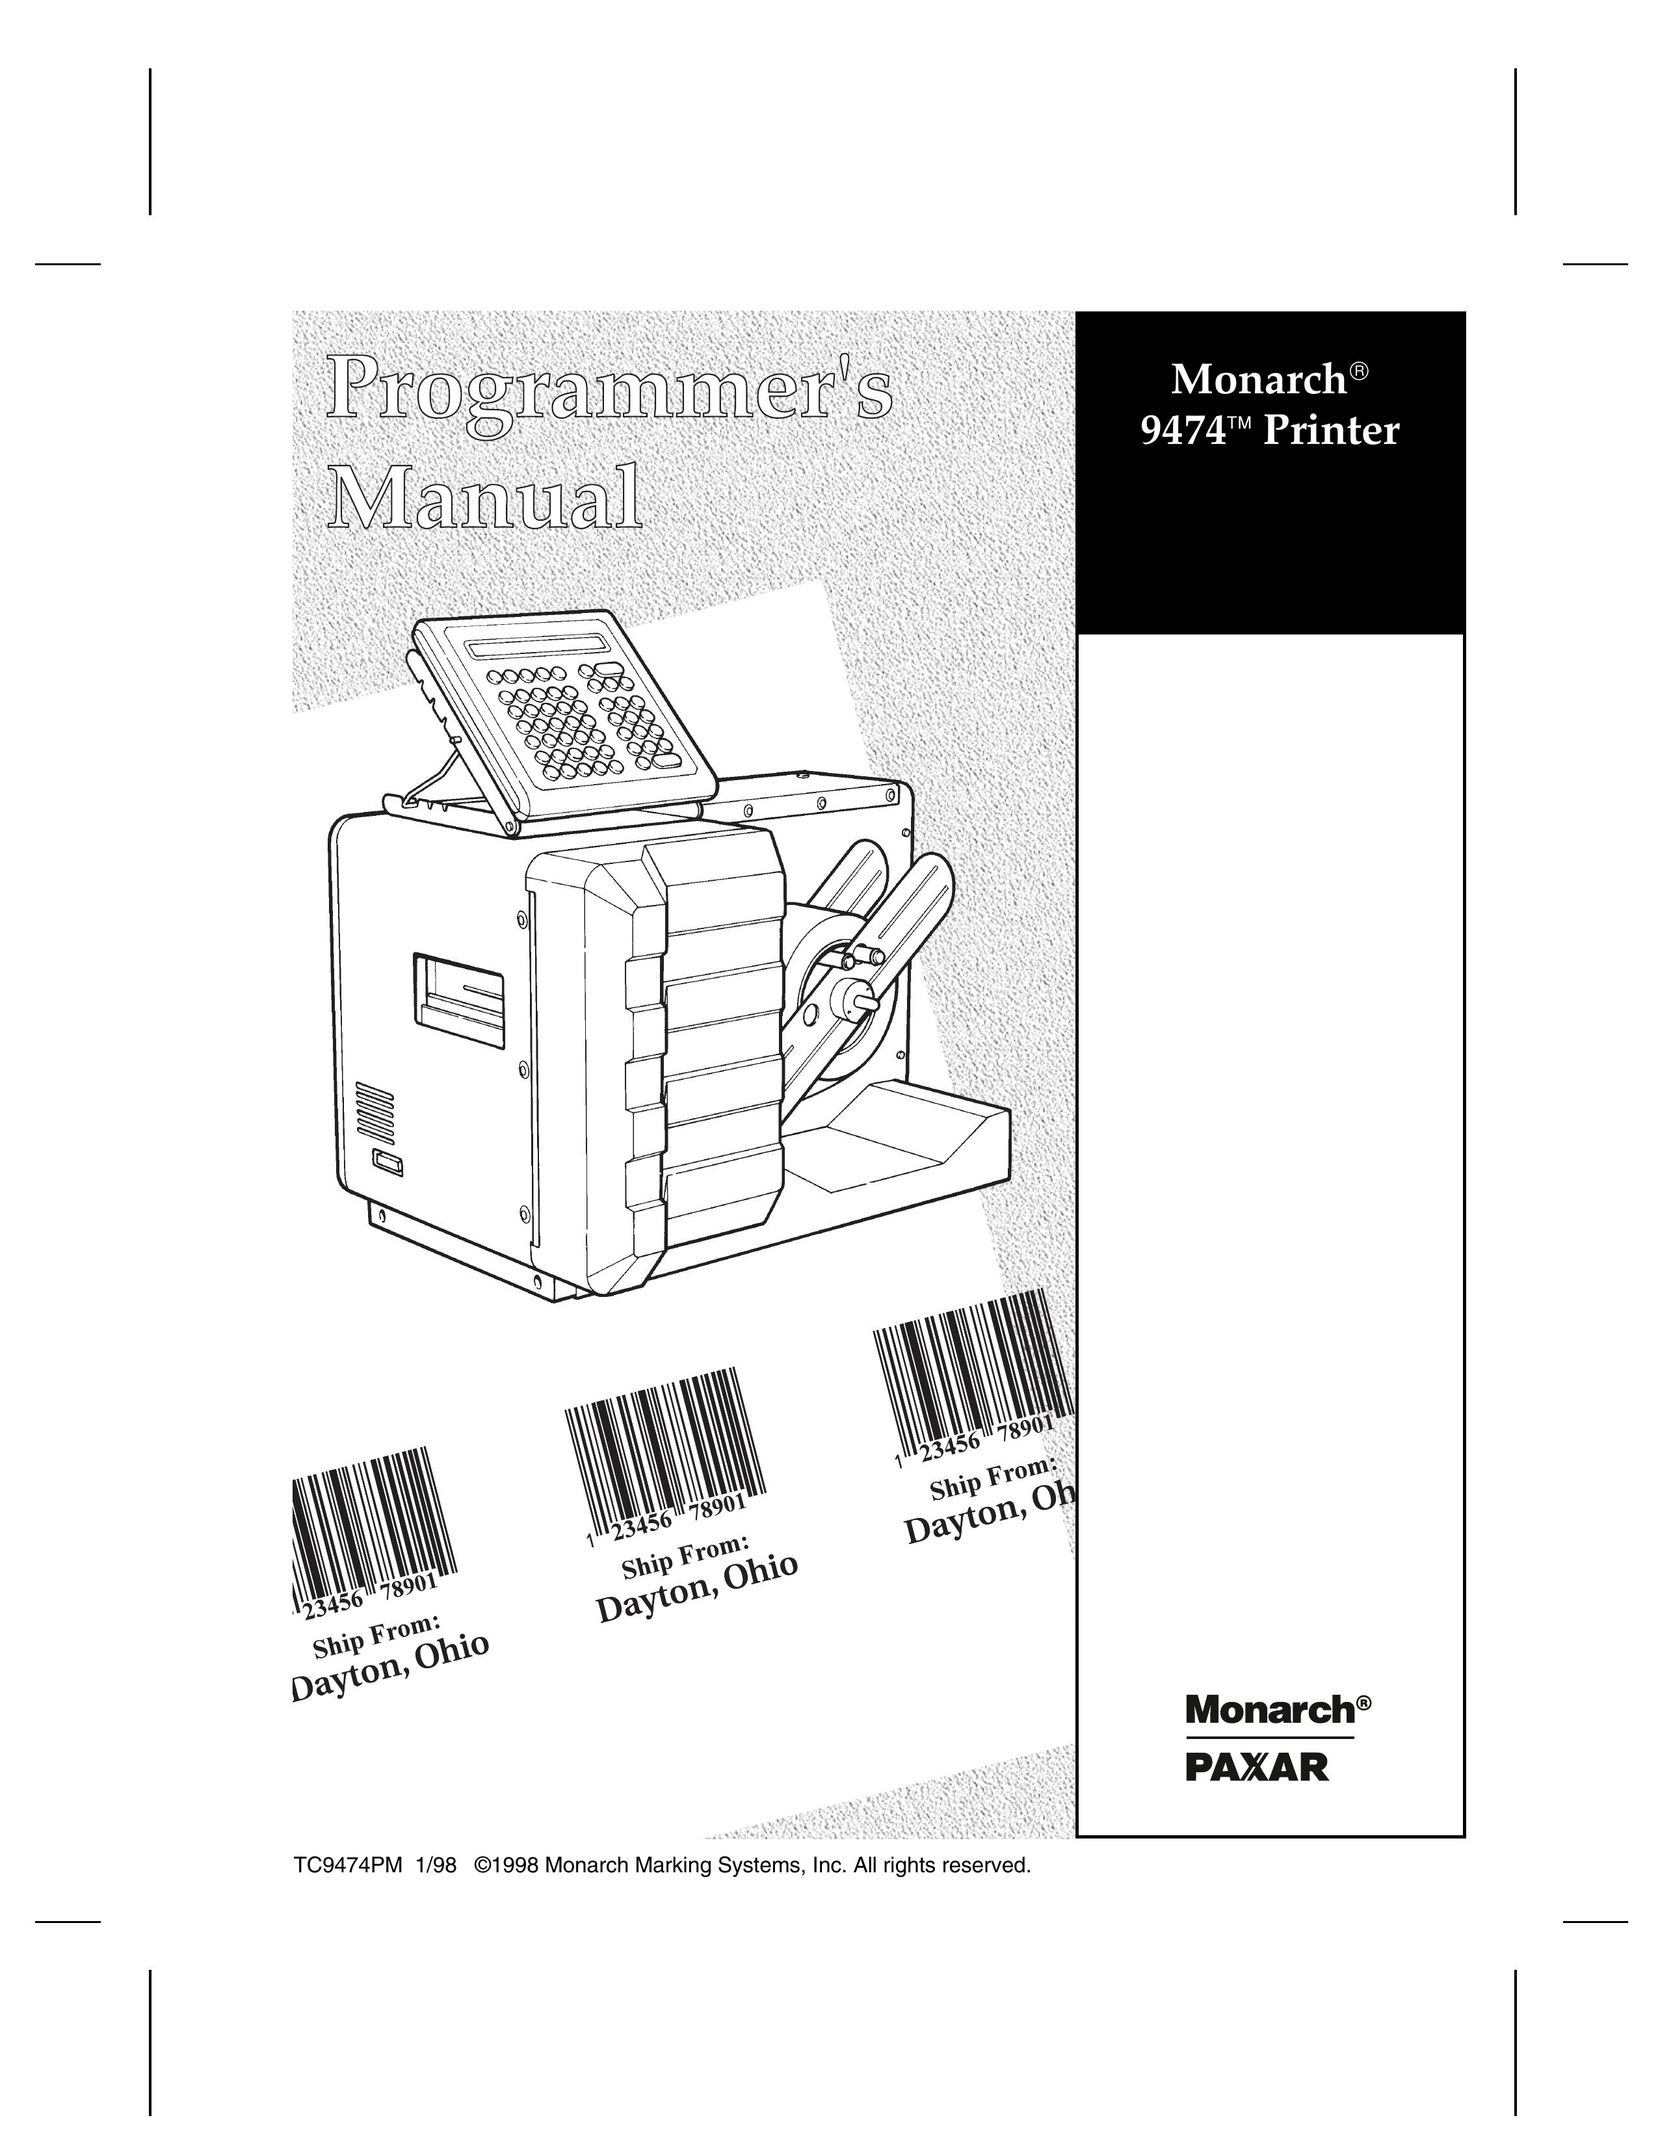 Paxar 9474 Printer User Manual